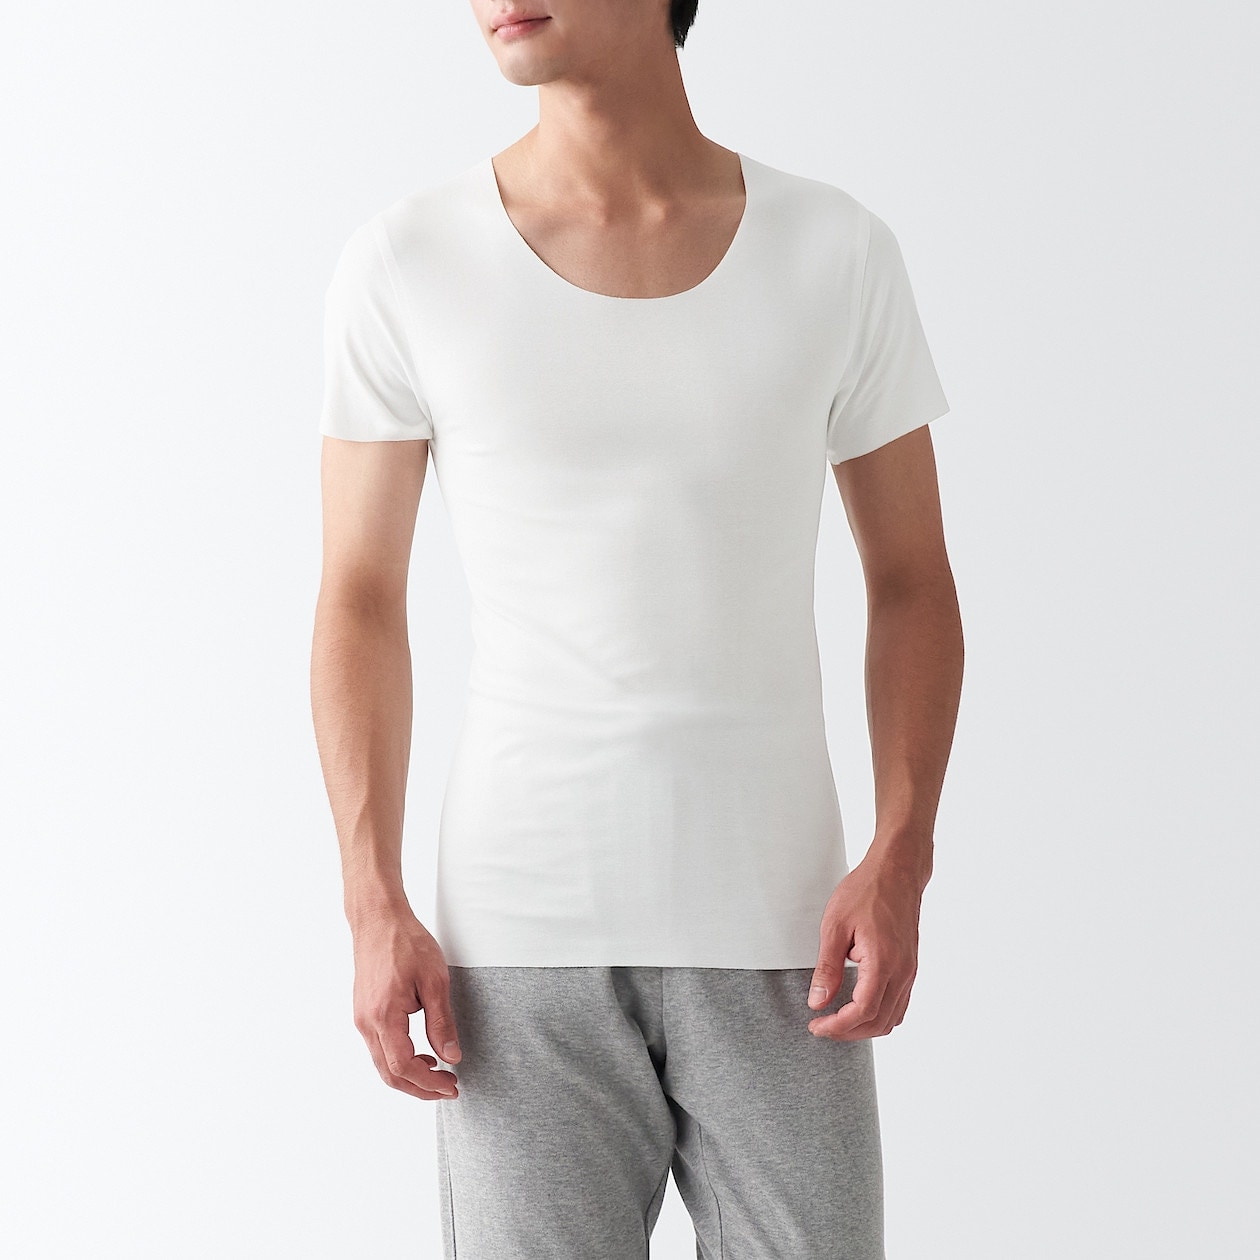 WHITE(봉제선이 없는 · 티가 나지 않는 이너 티셔츠)